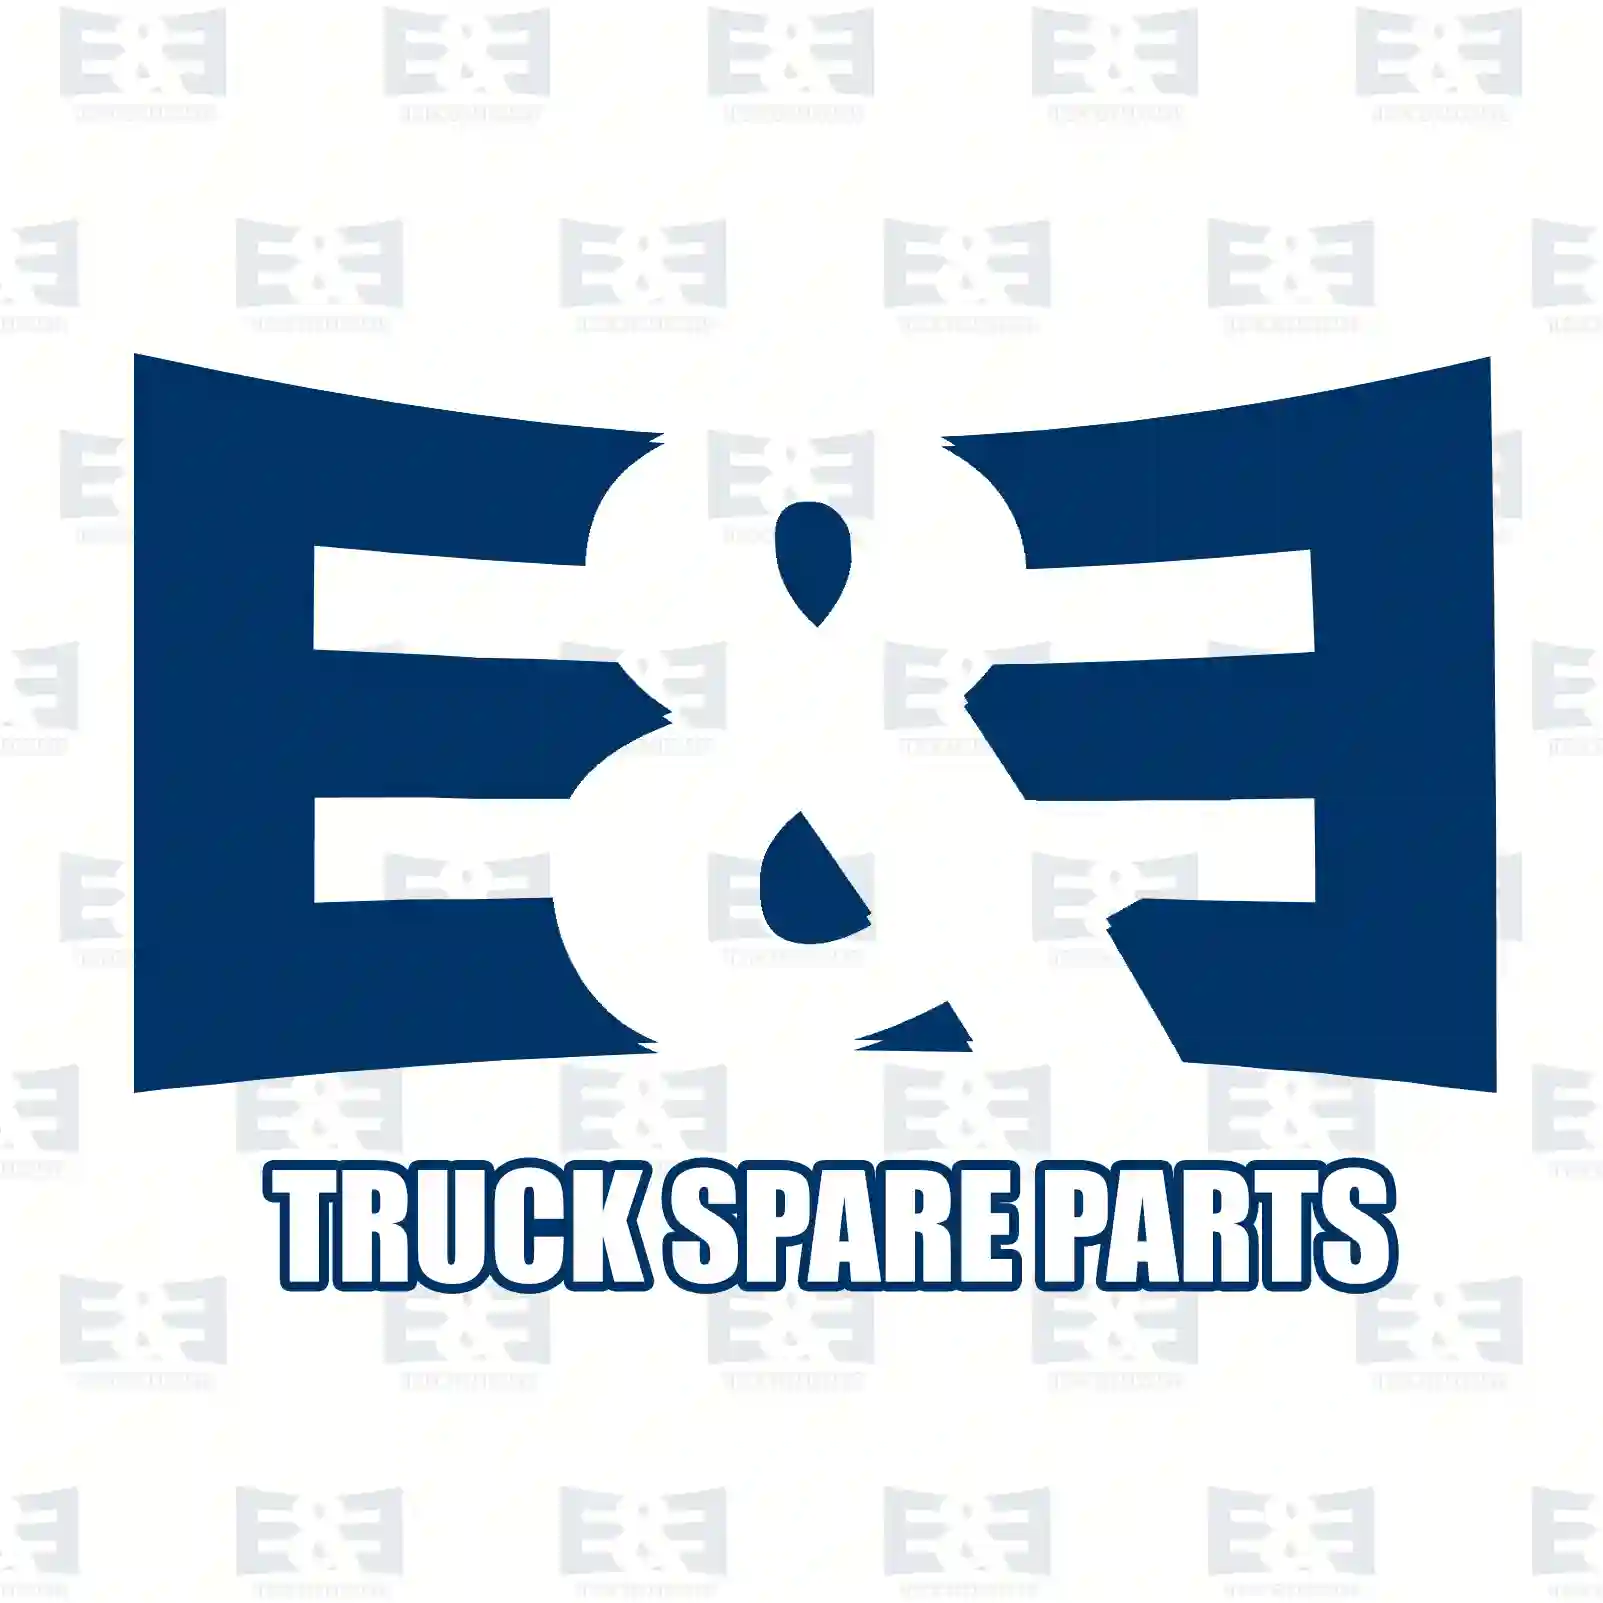 Fan, 2E2201840, 1253A0S, 07608436S, 46554752S, 60815453S, 7608436S, 1253A0S ||  2E2201840 E&E Truck Spare Parts | Truck Spare Parts, Auotomotive Spare Parts Fan, 2E2201840, 1253A0S, 07608436S, 46554752S, 60815453S, 7608436S, 1253A0S ||  2E2201840 E&E Truck Spare Parts | Truck Spare Parts, Auotomotive Spare Parts